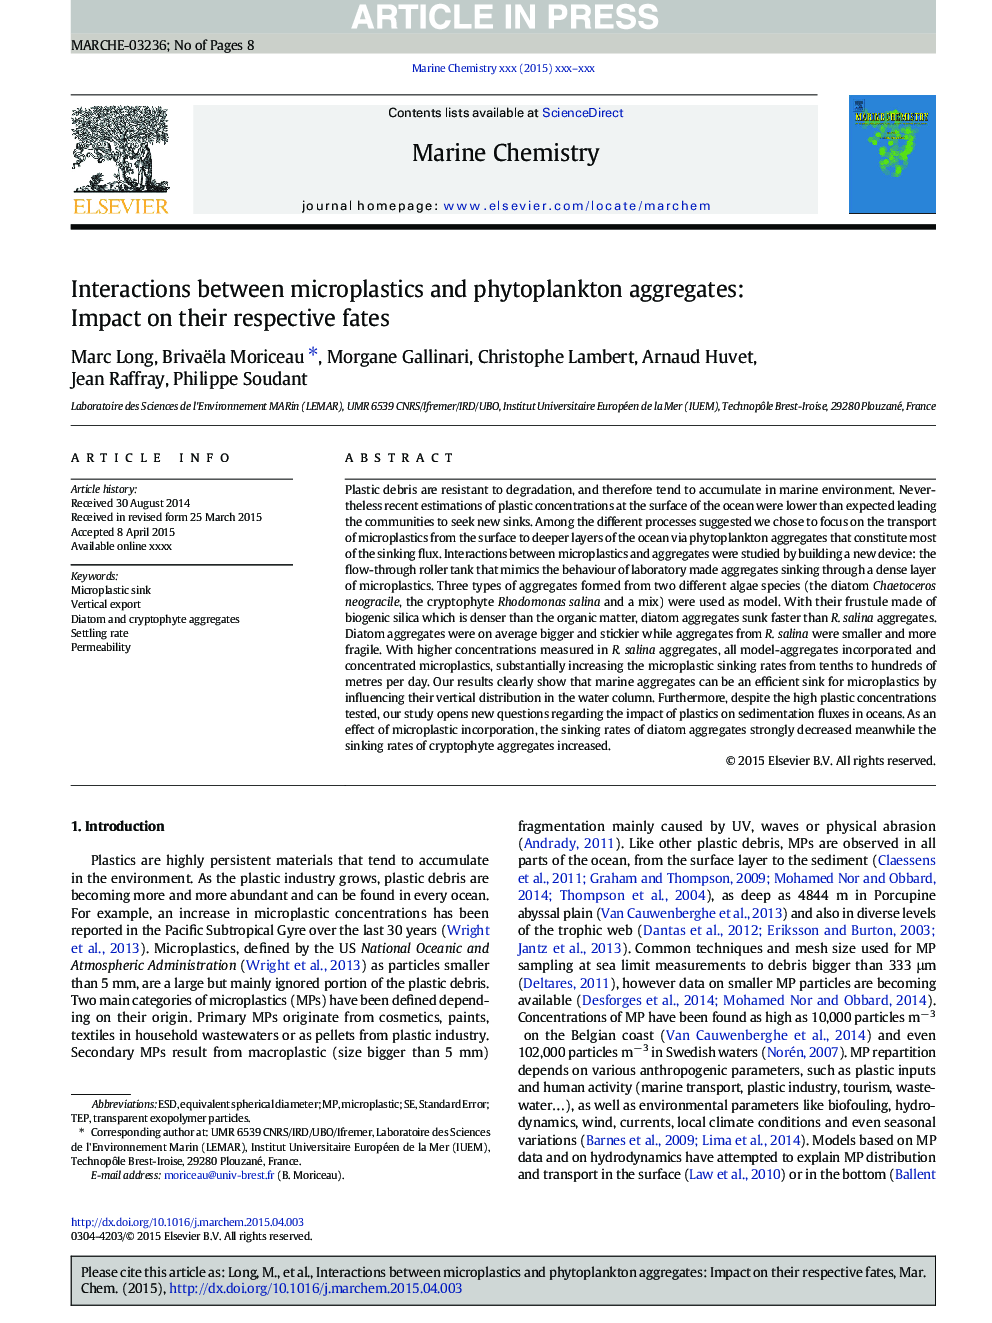 تعاملات بین میکروپلاستی و ترکیبات فیتوپلانکتون: تاثیر بر سرنوشت مربوطه 